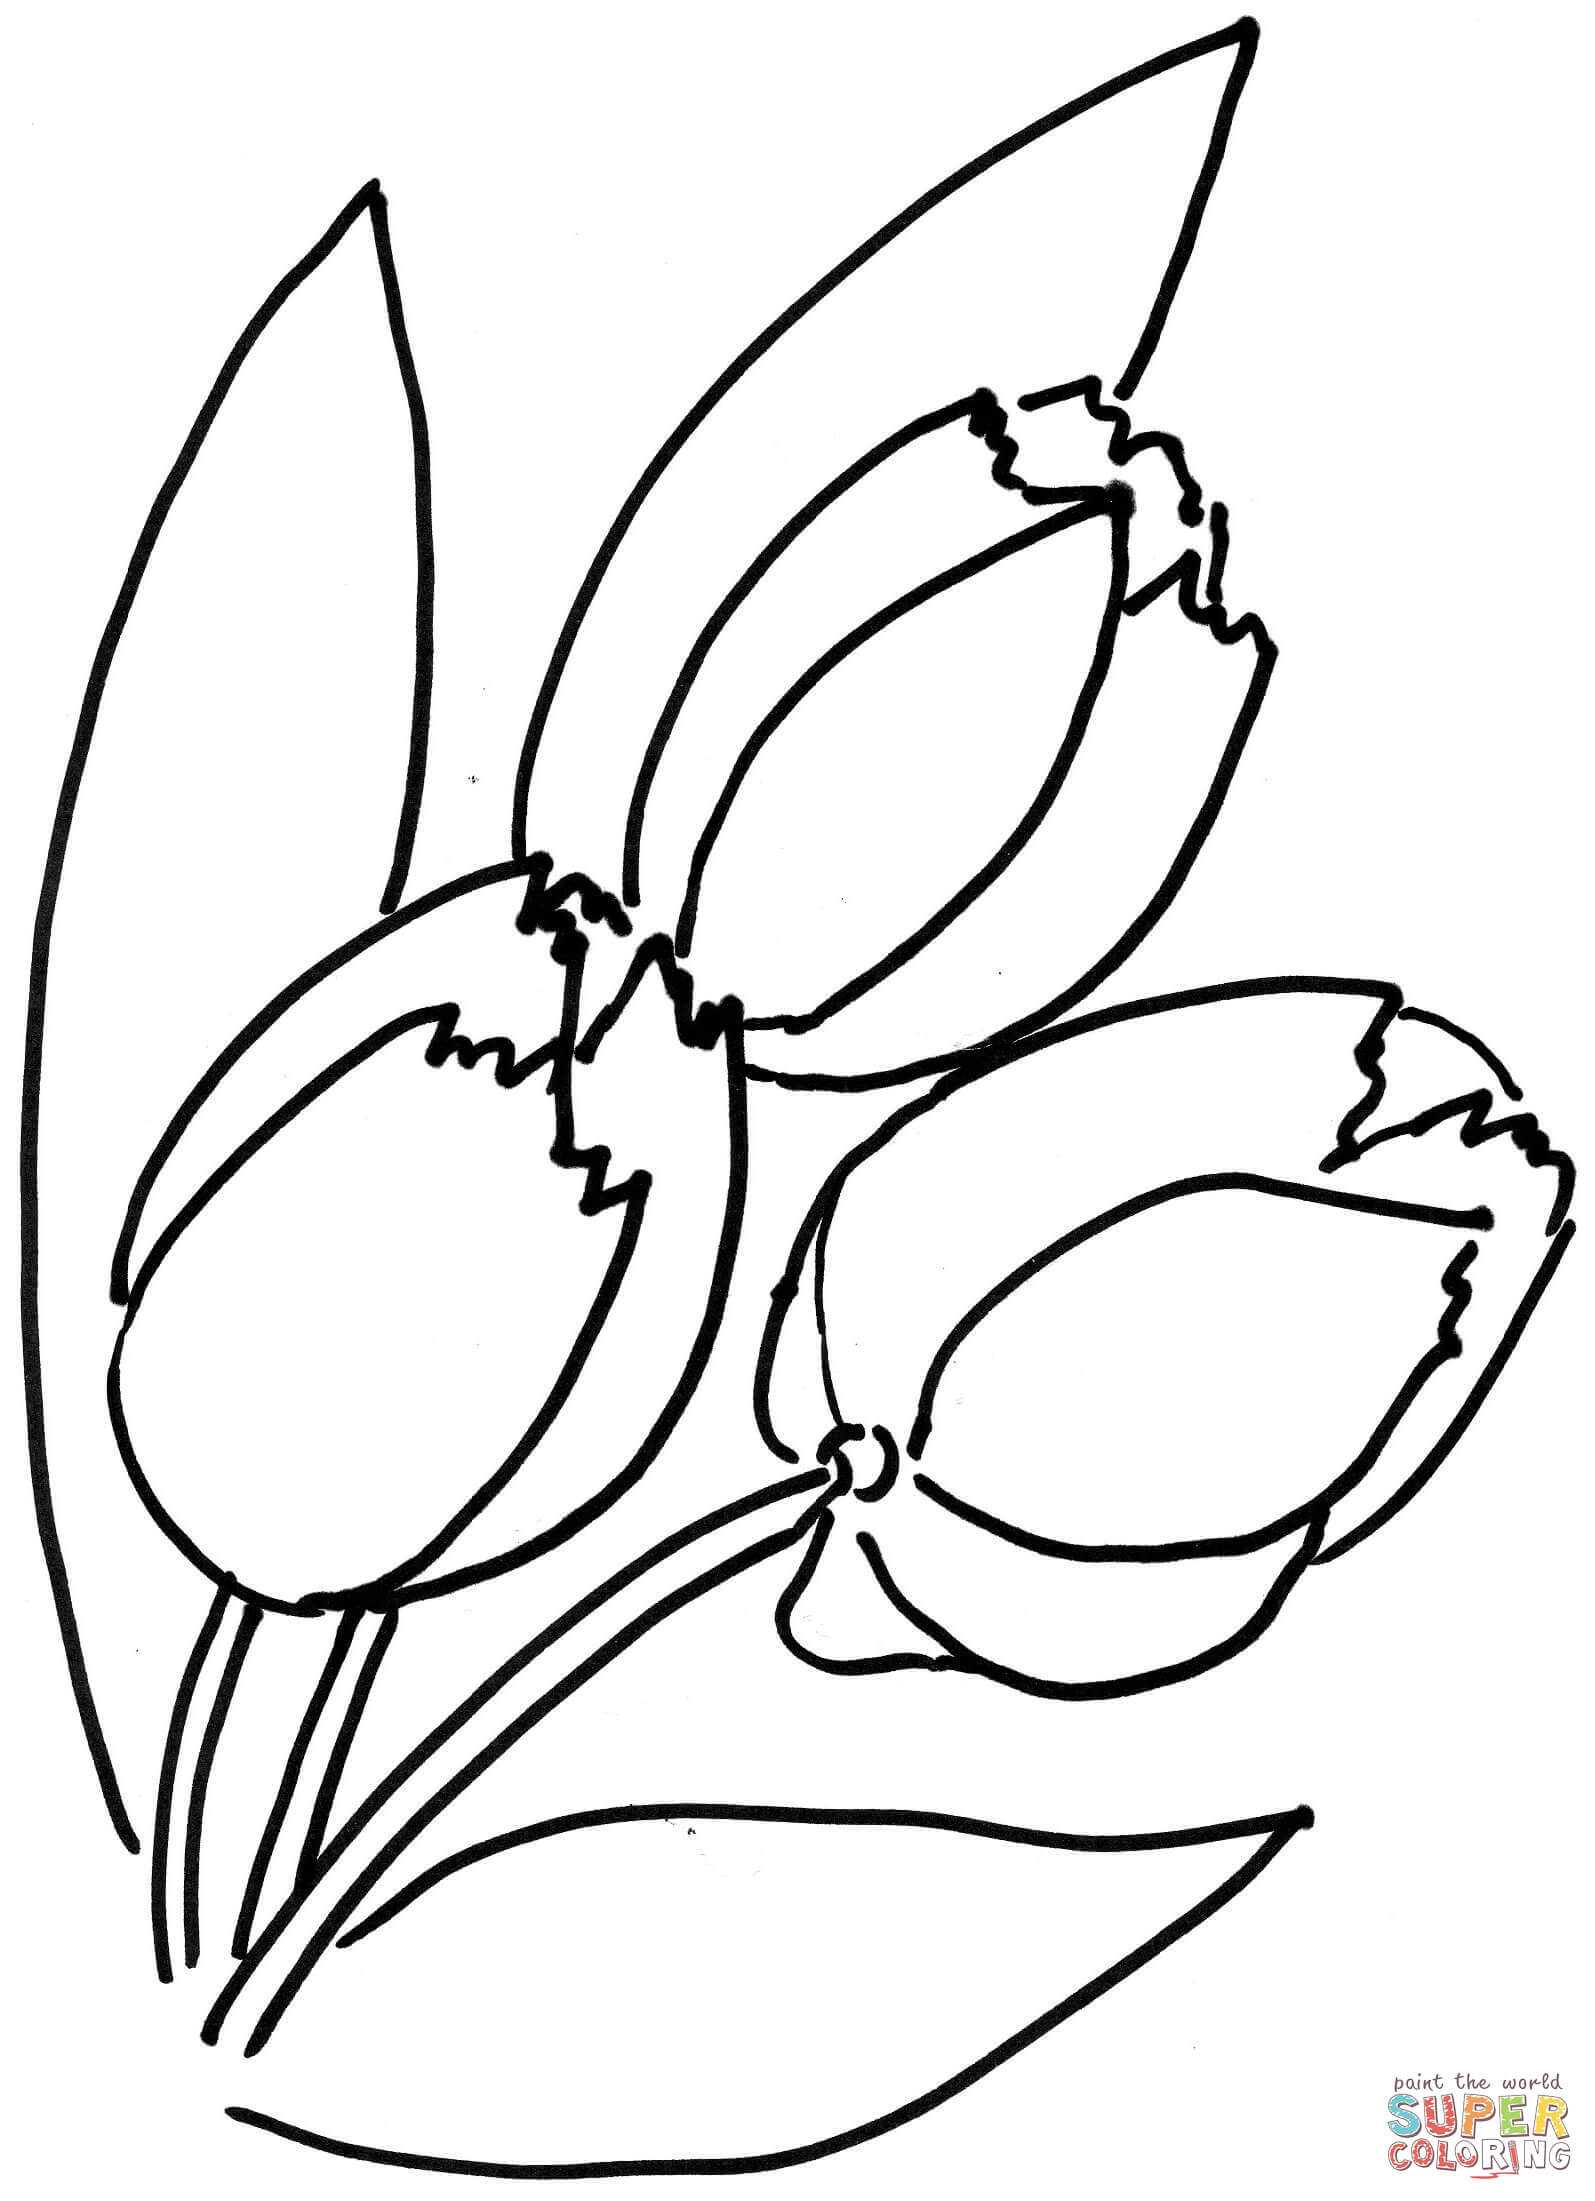 Tulpen Bloem van Tulp